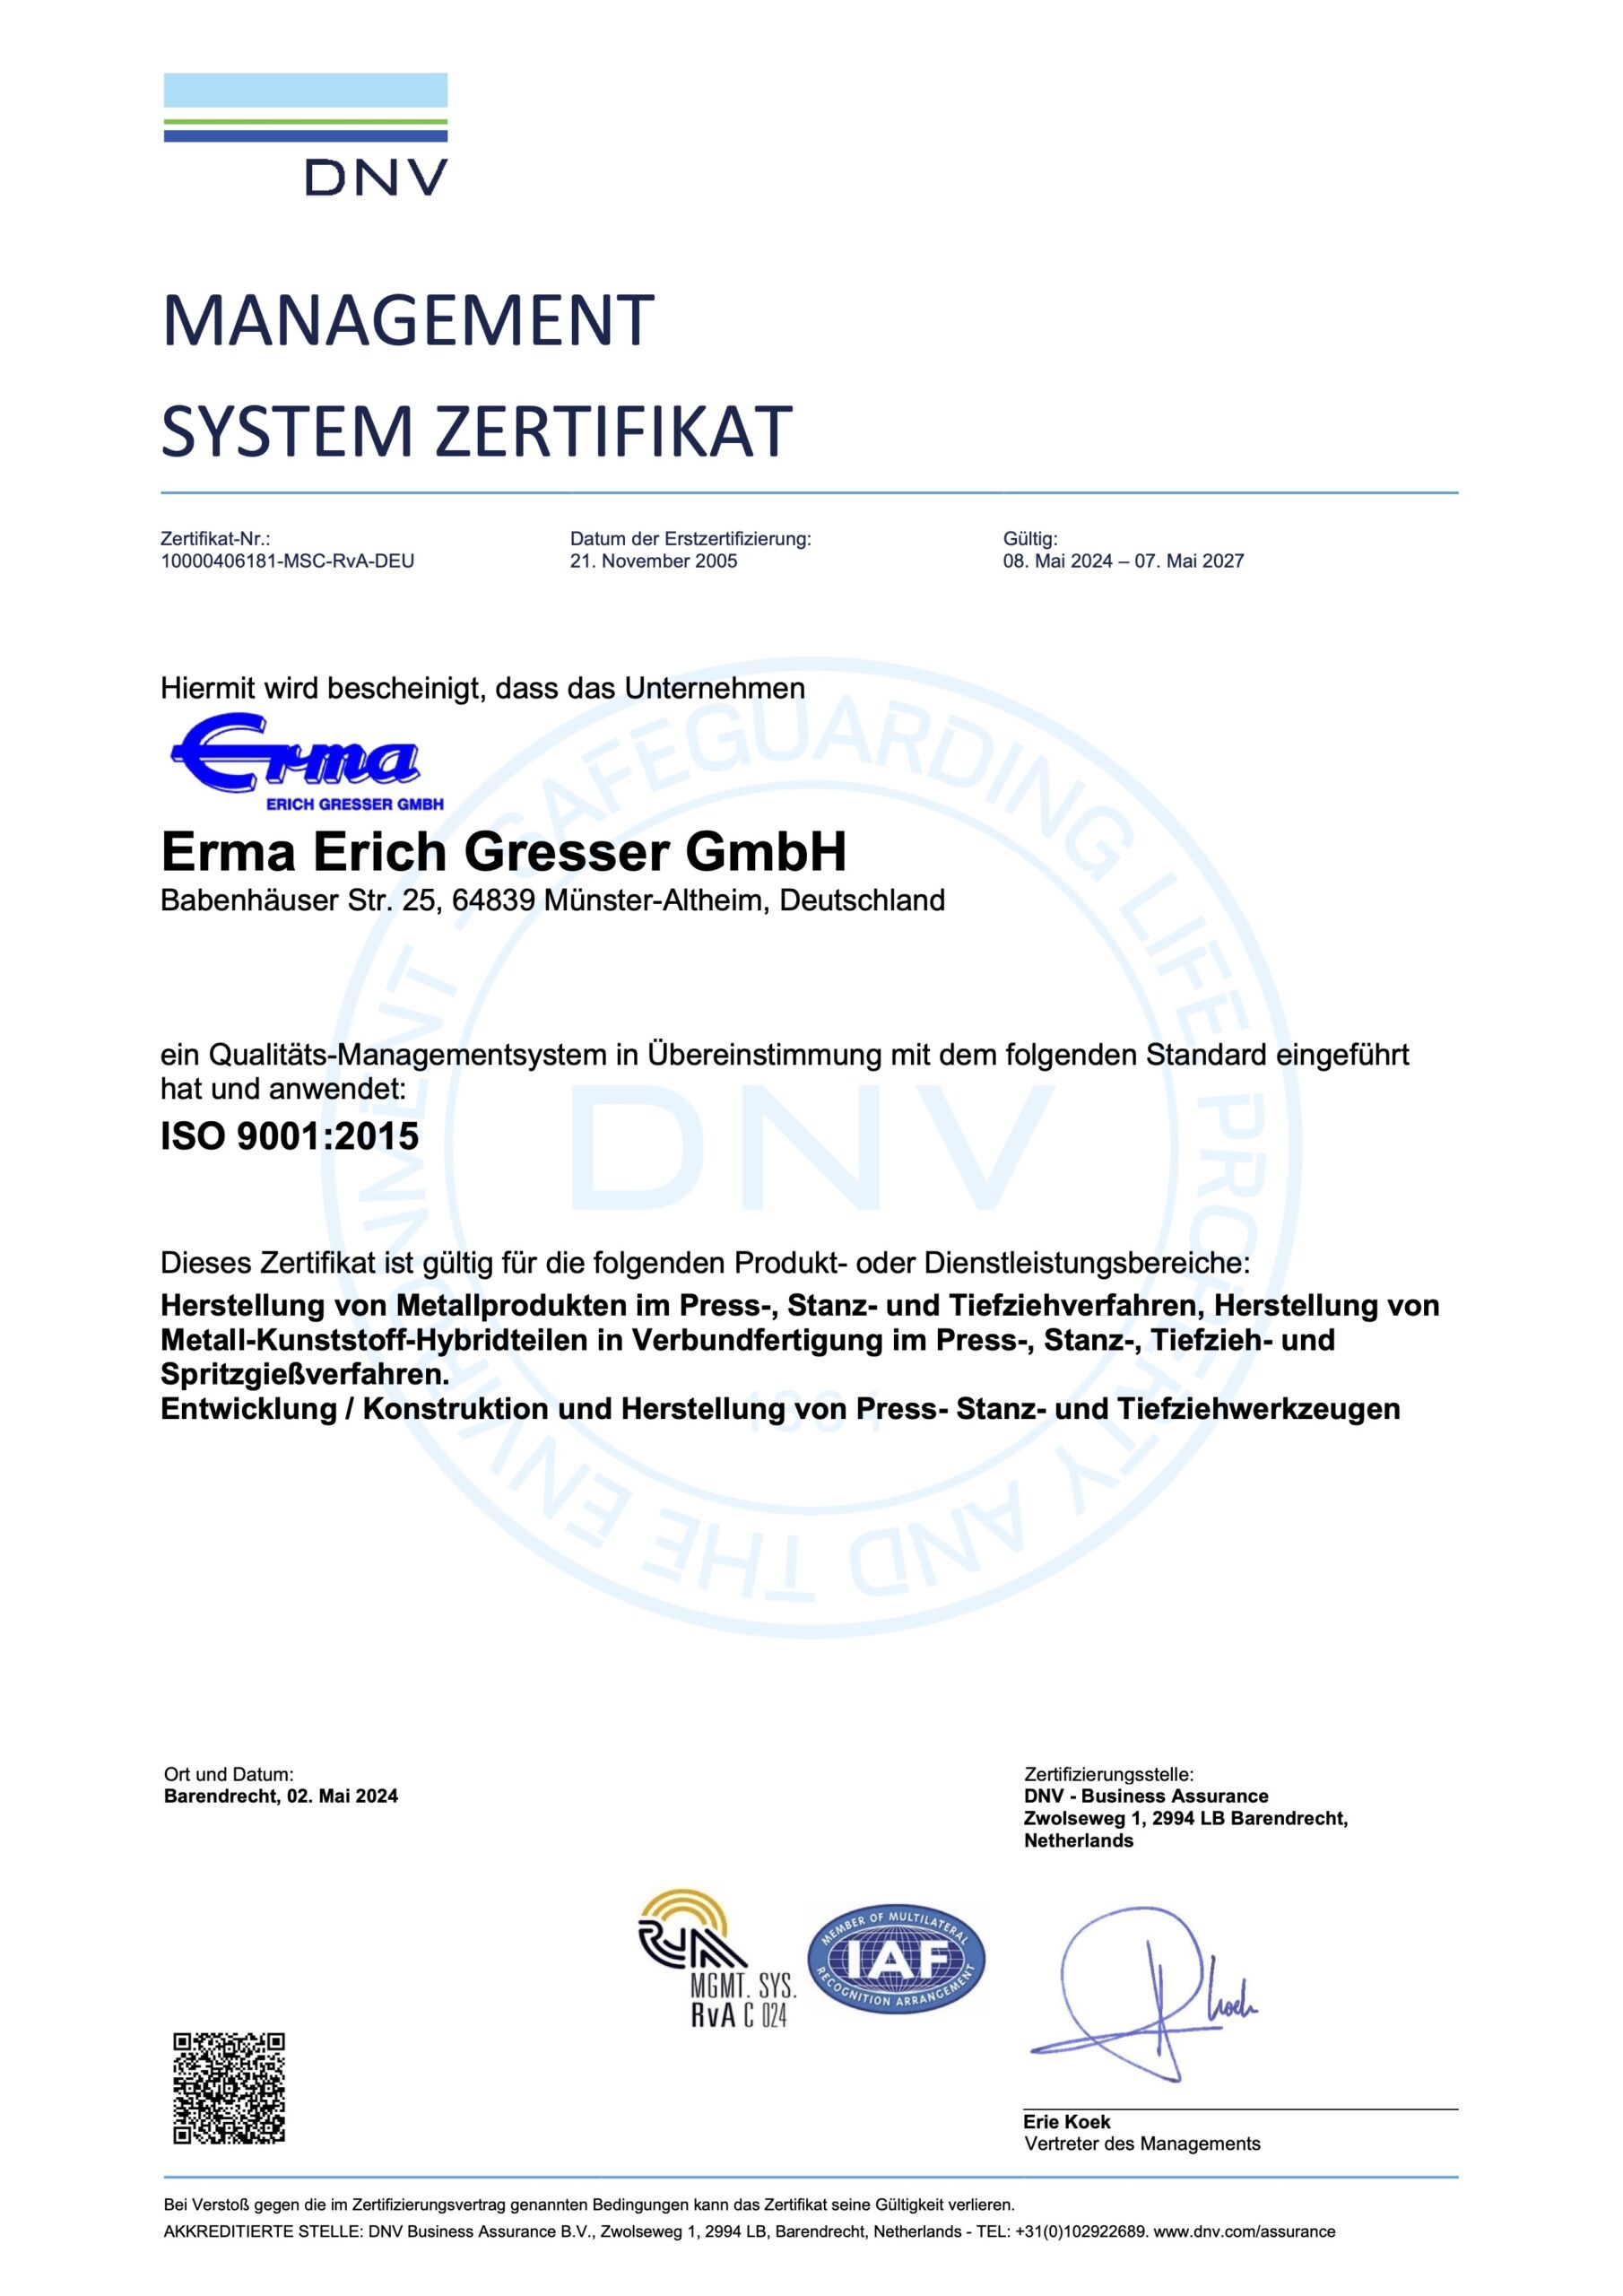 Ein DNV-Managementsystem-Zertifikat für die Erma Erich Gresser GmbH bestätigt die Einhaltung der ISO 9001:2015 für bestimmte Produktions- und Dienstleistungsbereiche und gewährleistet so die Qualitätssicherung. Diese Zertifizierung ist bis zum 30. Juli 2025 gültig.